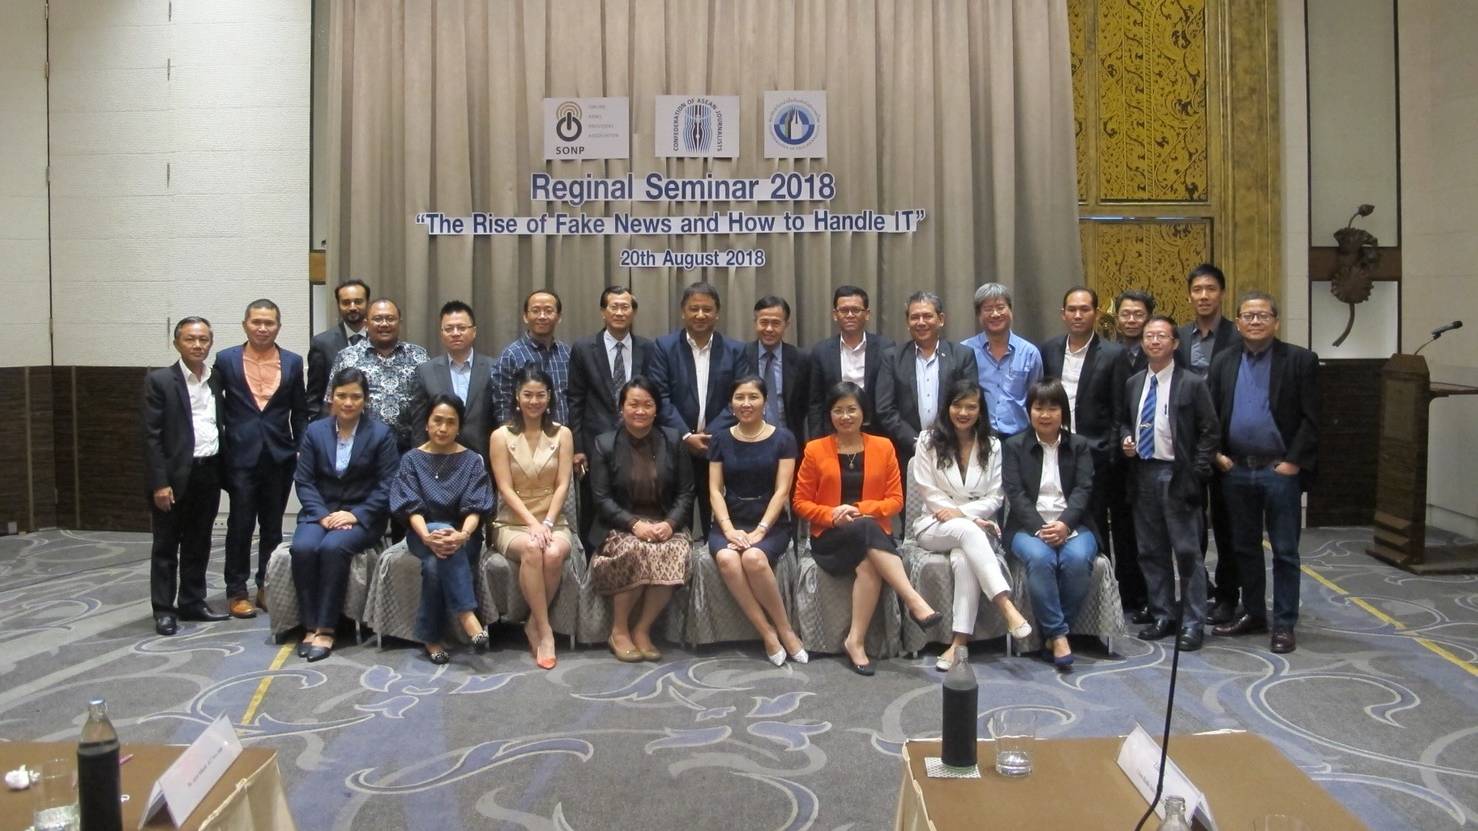 จบอย่างสวยงามงาน Regional Seminar 2018 สื่อไทย-ต่างชาติร่วมแก้ปัญหาข่าวปลอม